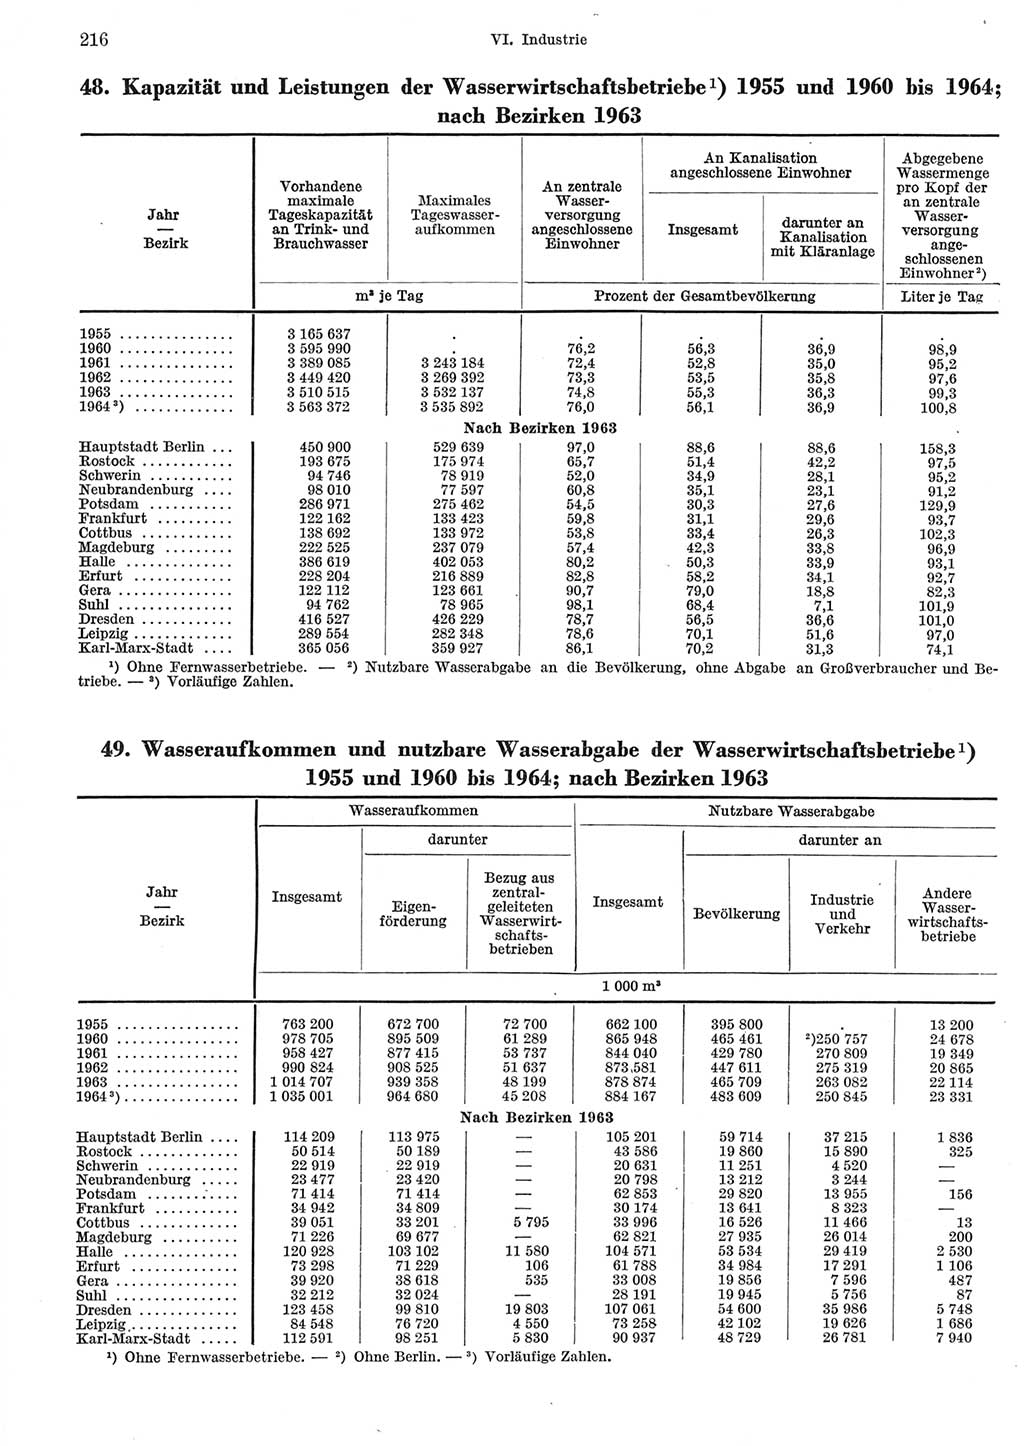 Statistisches Jahrbuch der Deutschen Demokratischen Republik (DDR) 1965, Seite 216 (Stat. Jb. DDR 1965, S. 216)